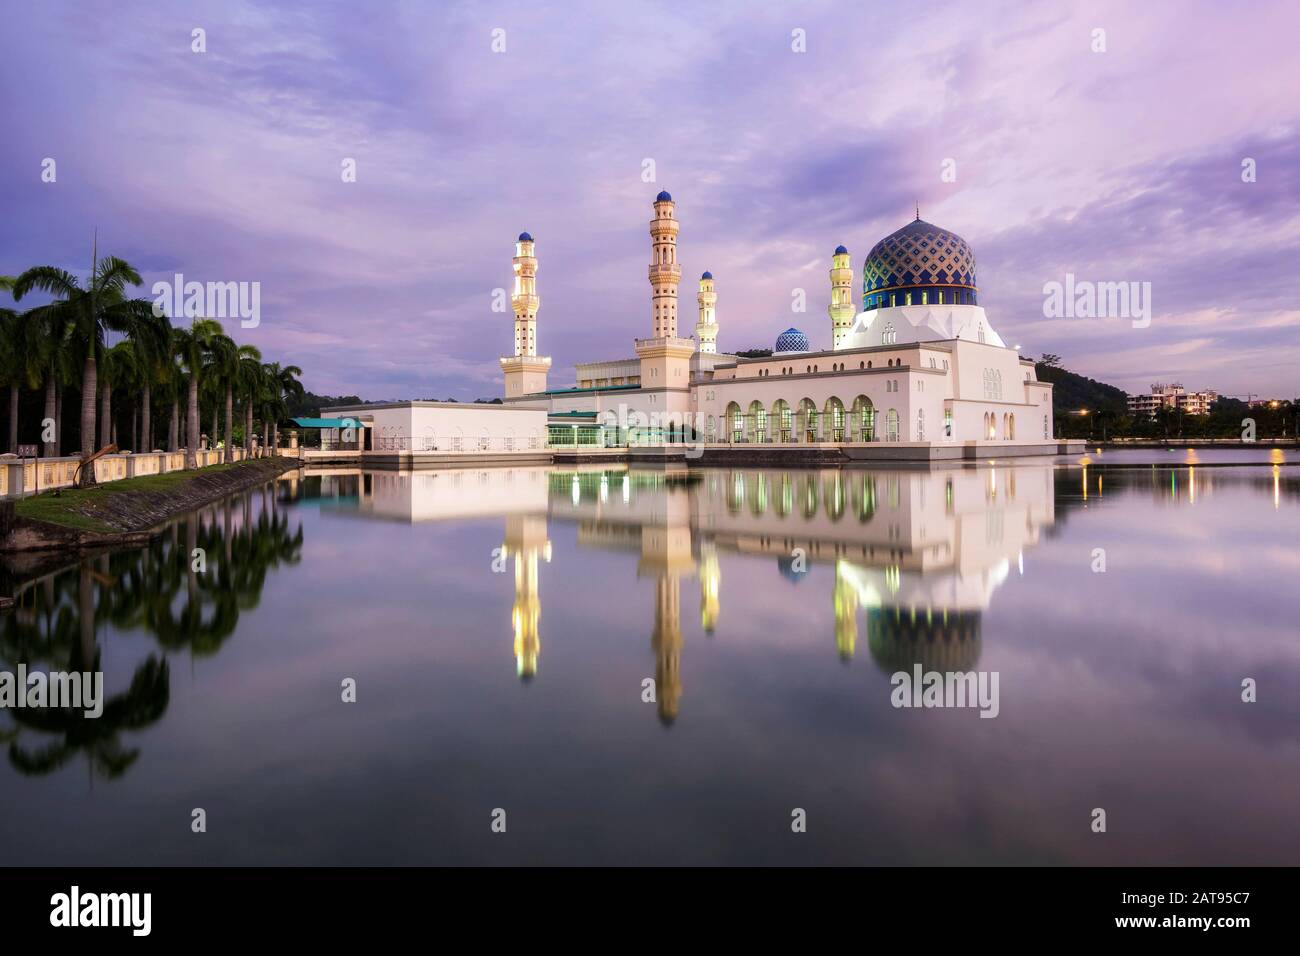 Kota Kinabalu City Mosque at Sunset in Sabah, Borneo, Malaysia. Stock Photo